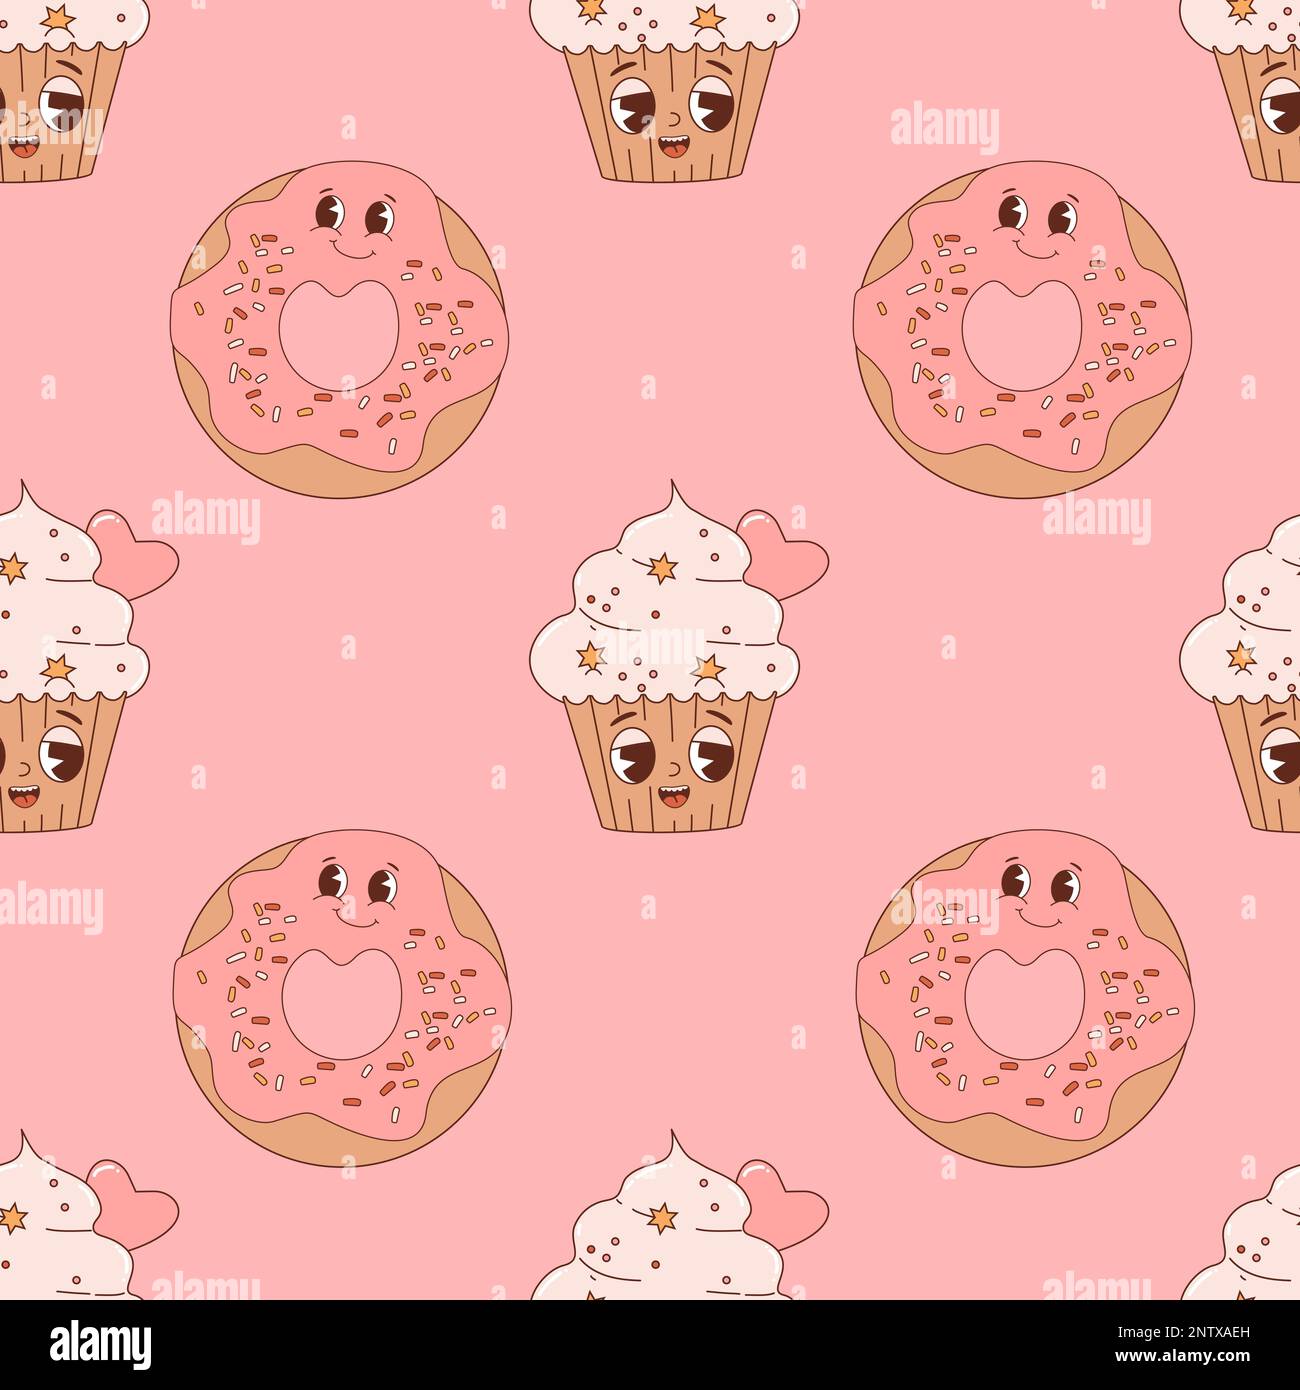 cute cartoon cupcakes wallpaper